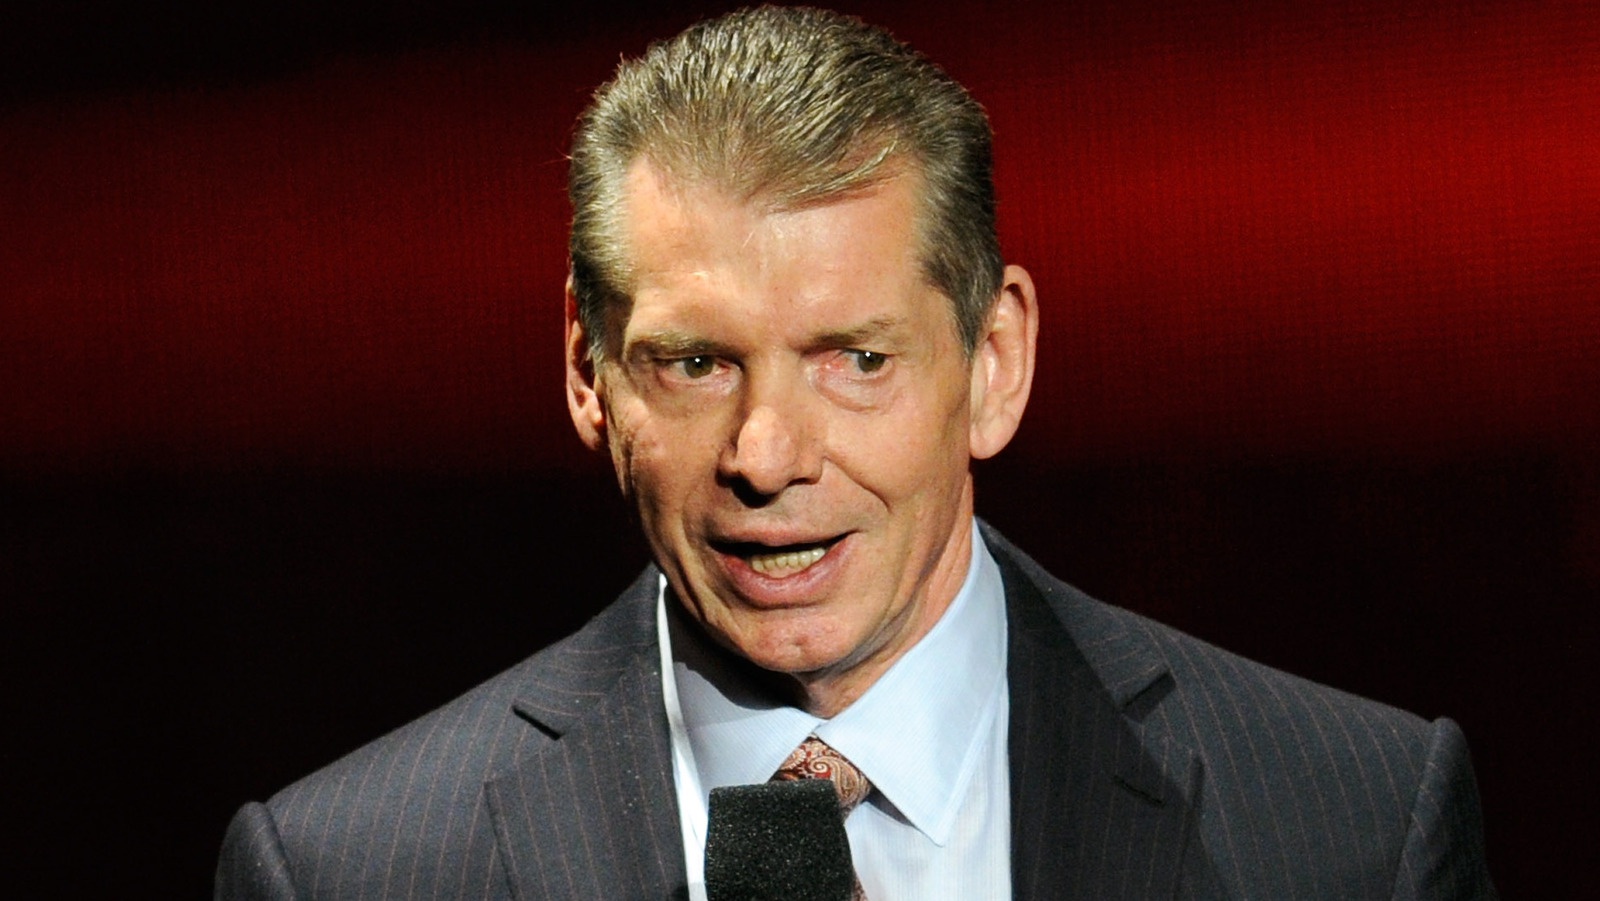 La leyenda de la lucha libre dice que Vince McMahon quería que usara un nuevo nombre y finalizador